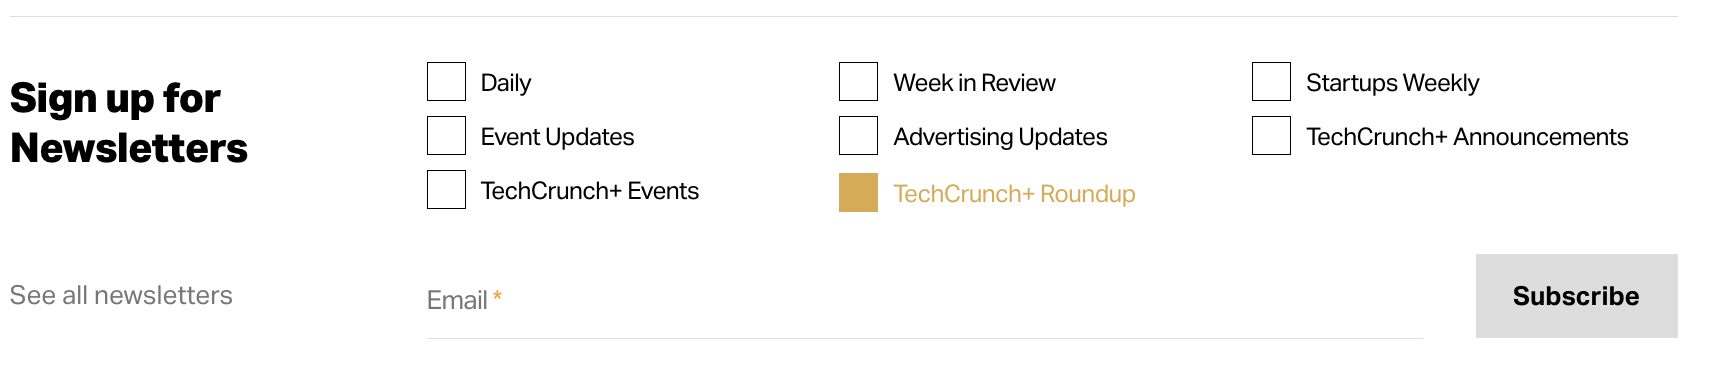 Melden Sie sich für den TechCrunch+ Roundup-Newsletter an